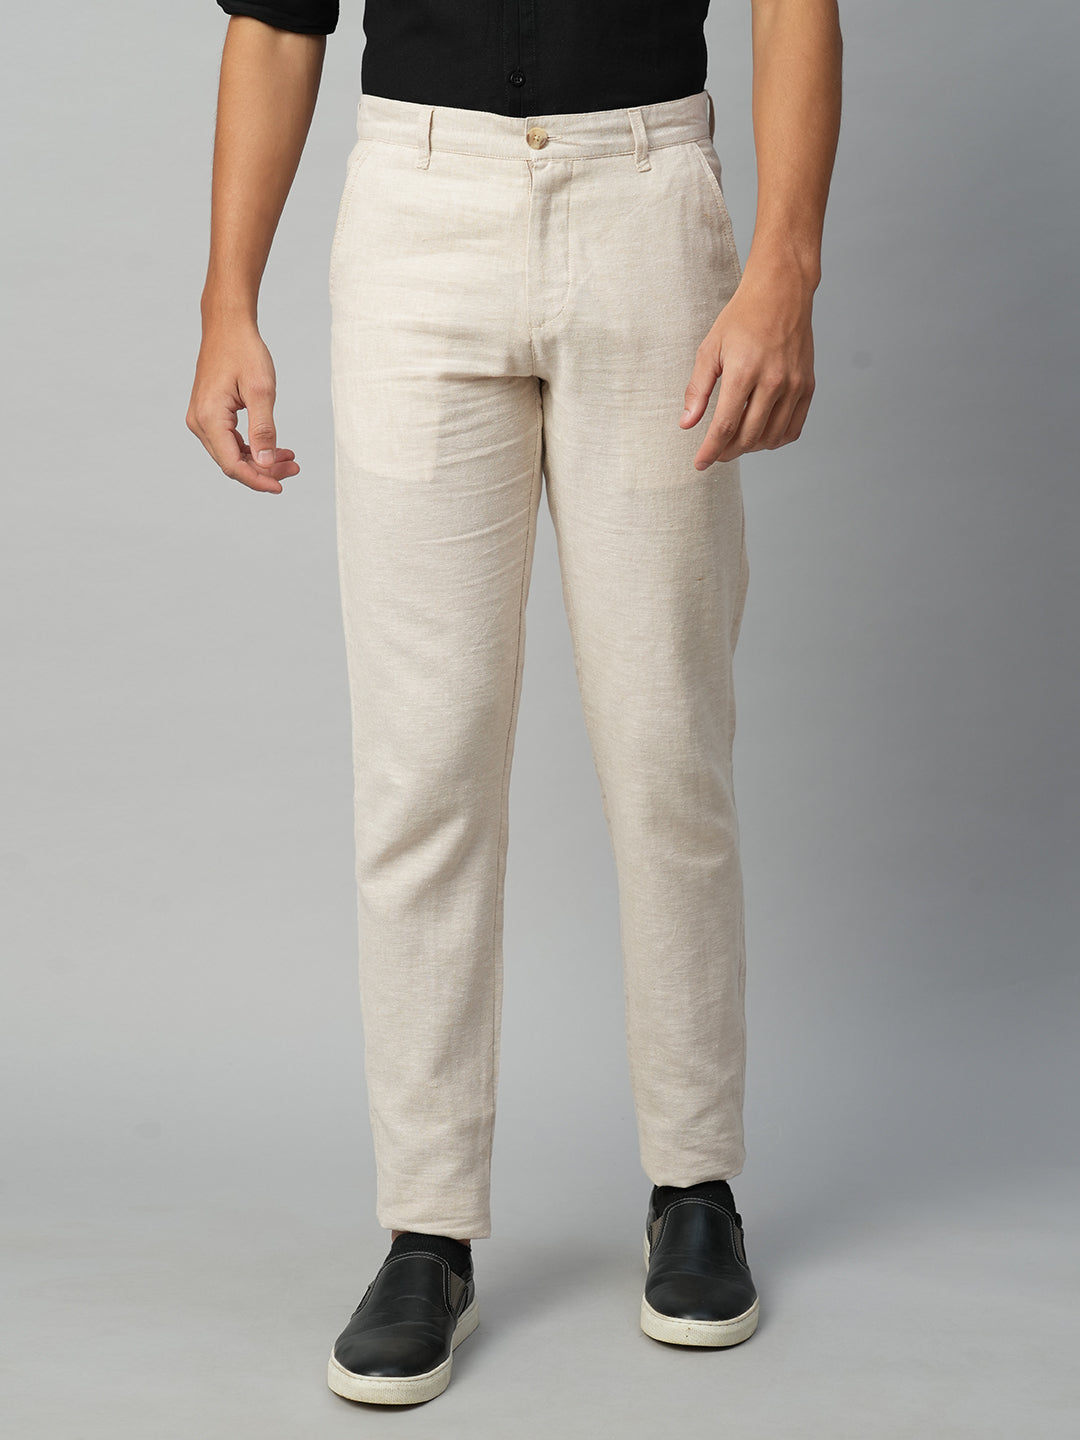 Buy Khaki Trousers  Pants for Men by ProEarth Online  Ajiocom